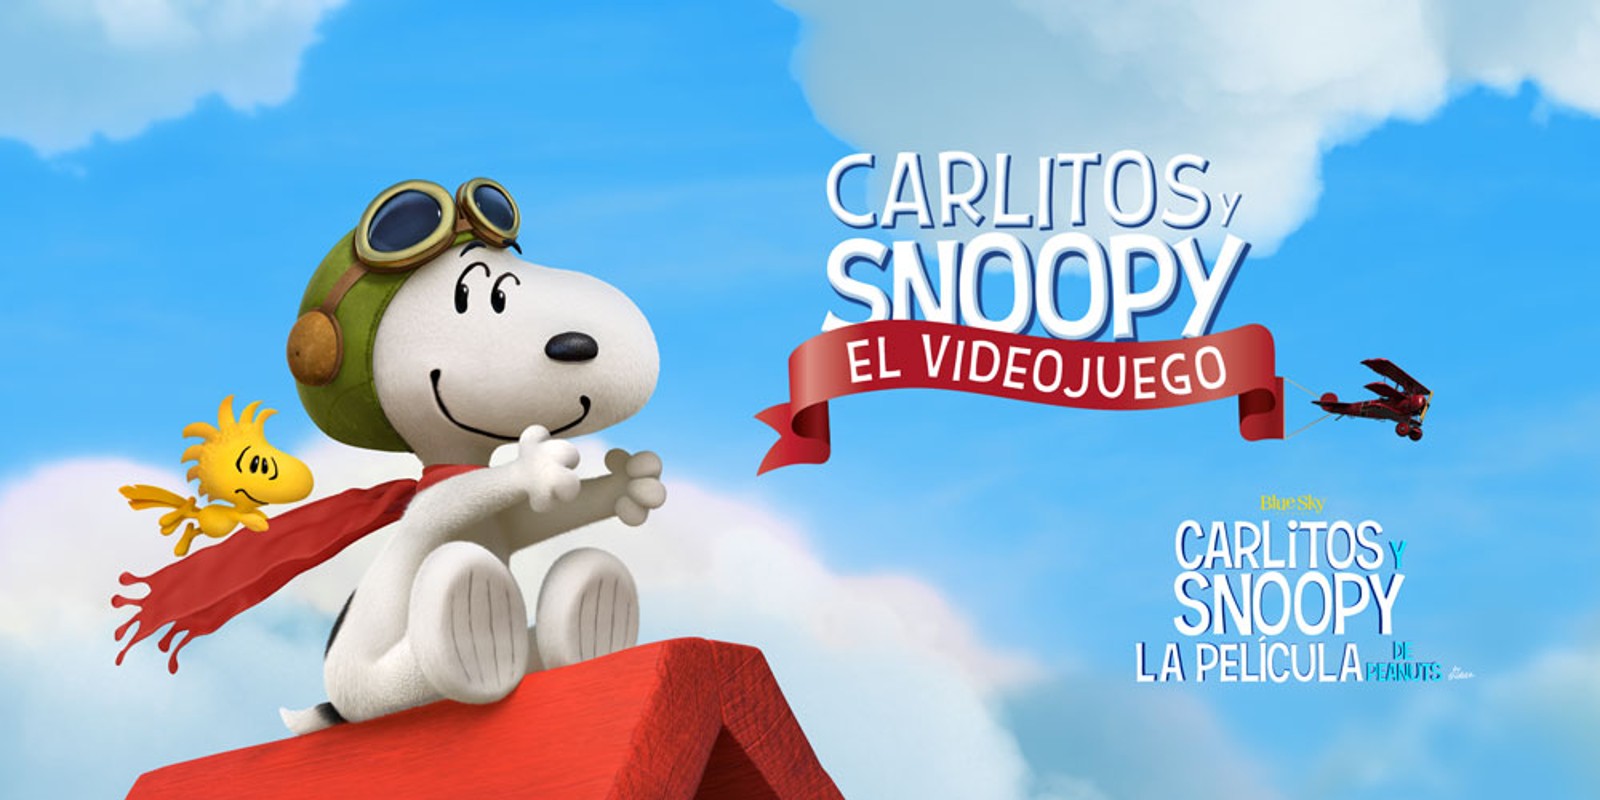 Carlitos y Snoopy: La pelicula - Carlitos y Snoopy: El videojuego